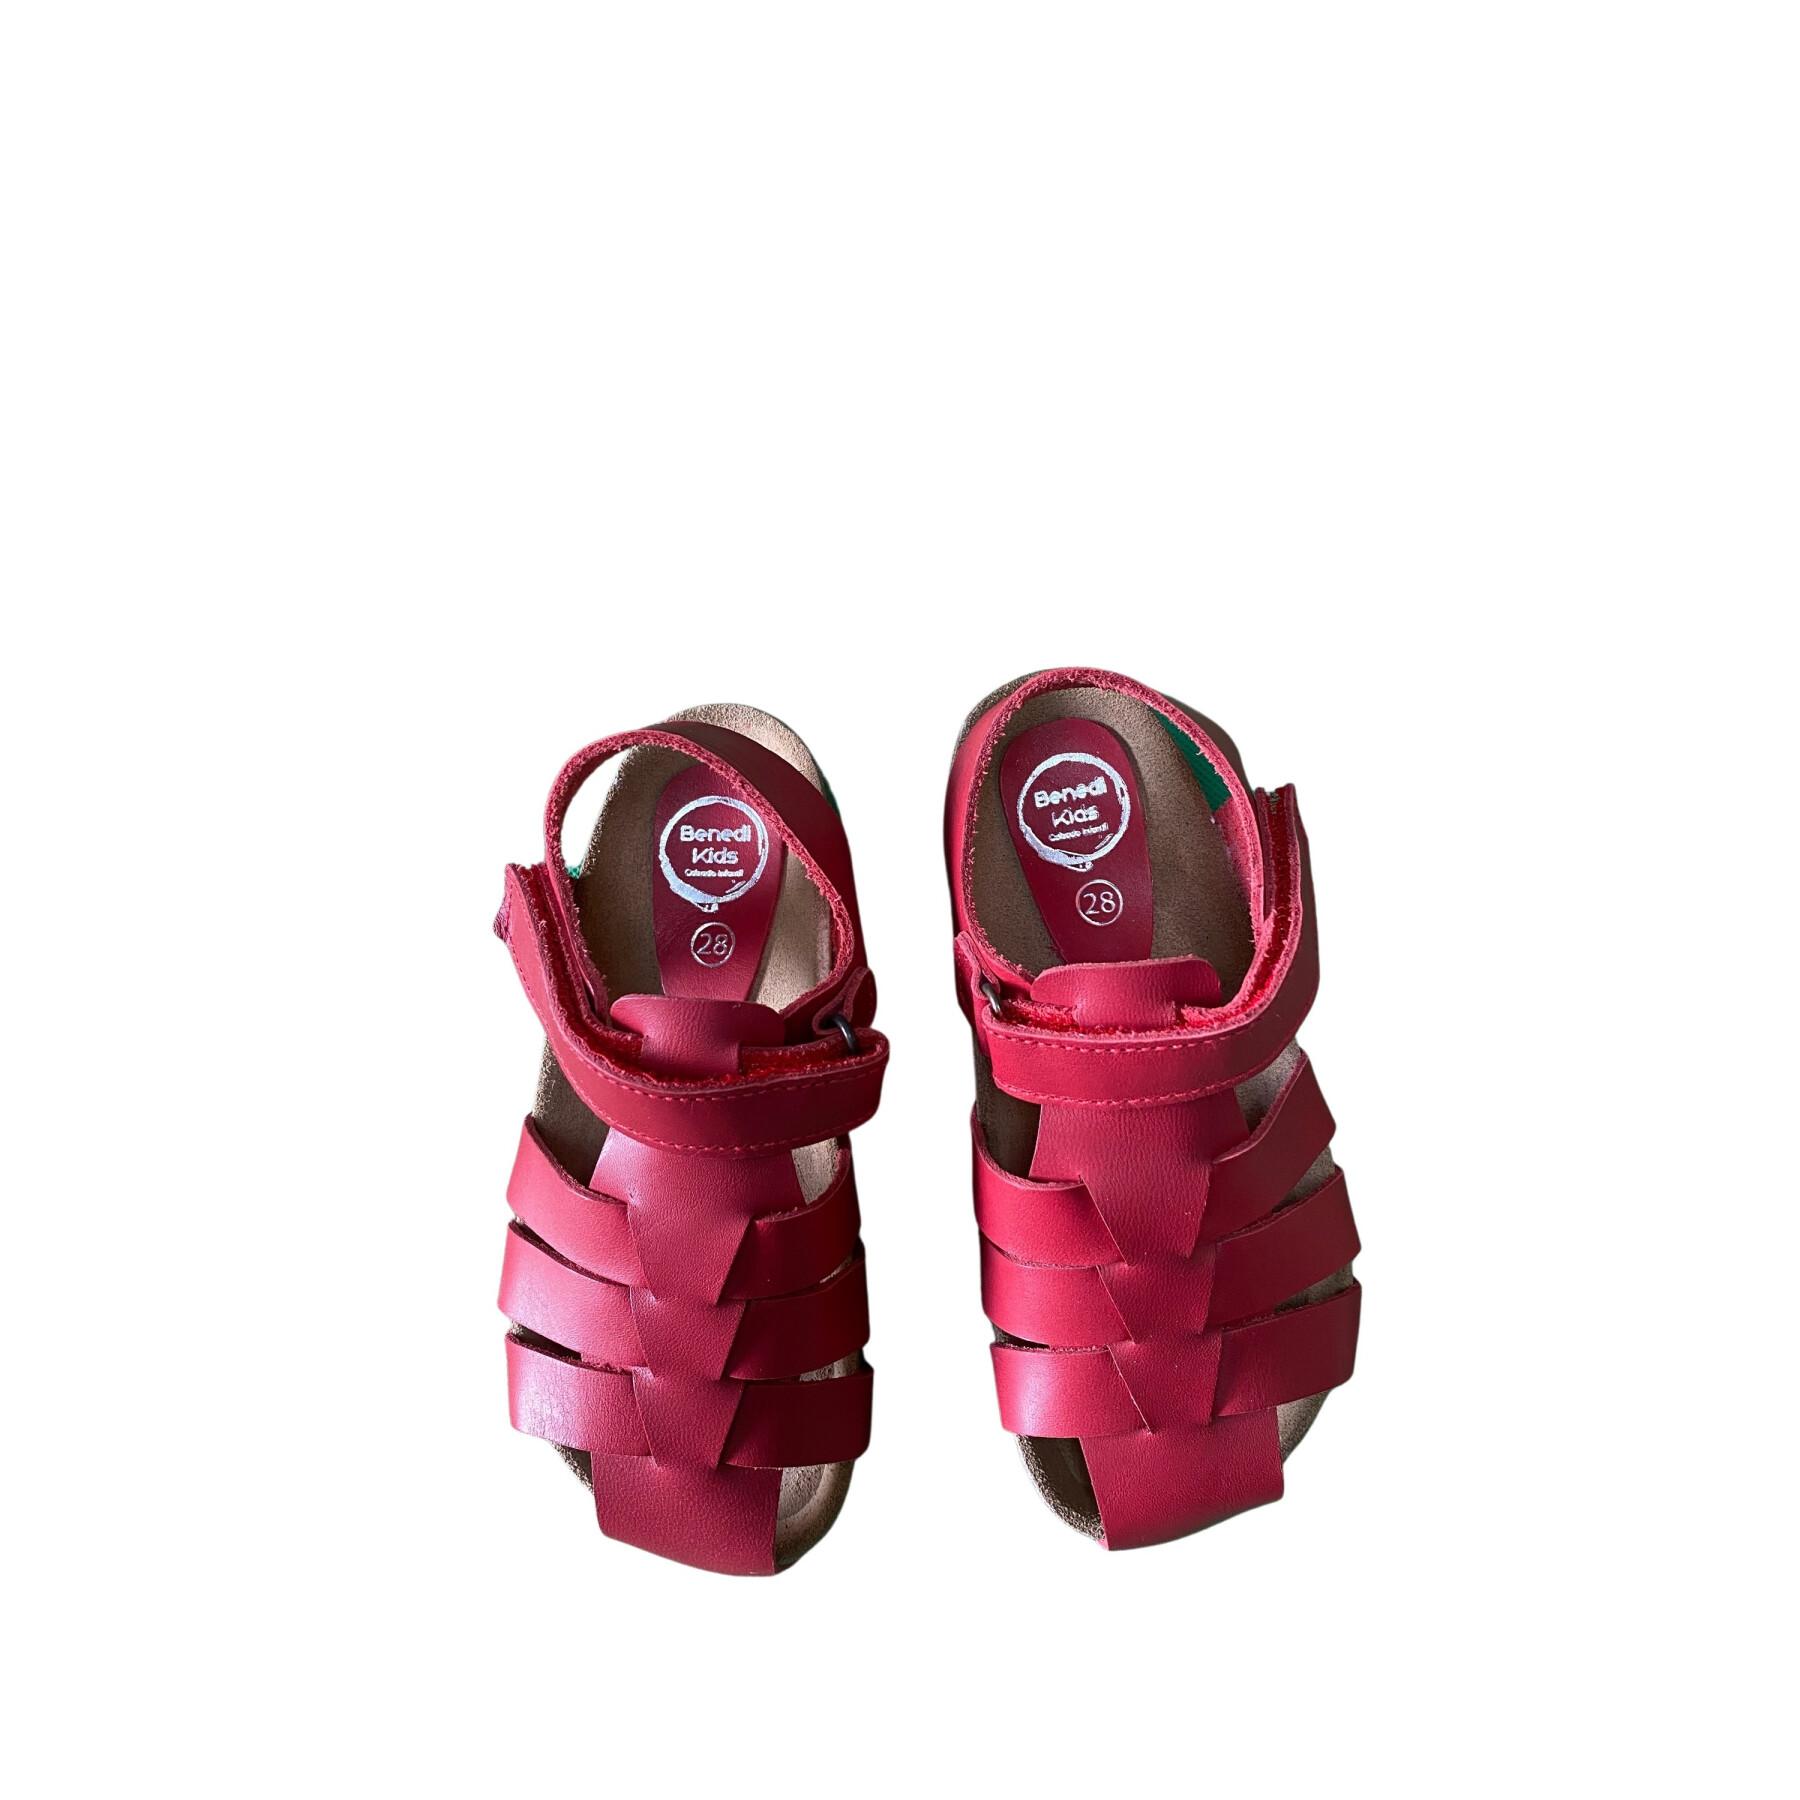 Children's sandals Benedi Vaquetilla